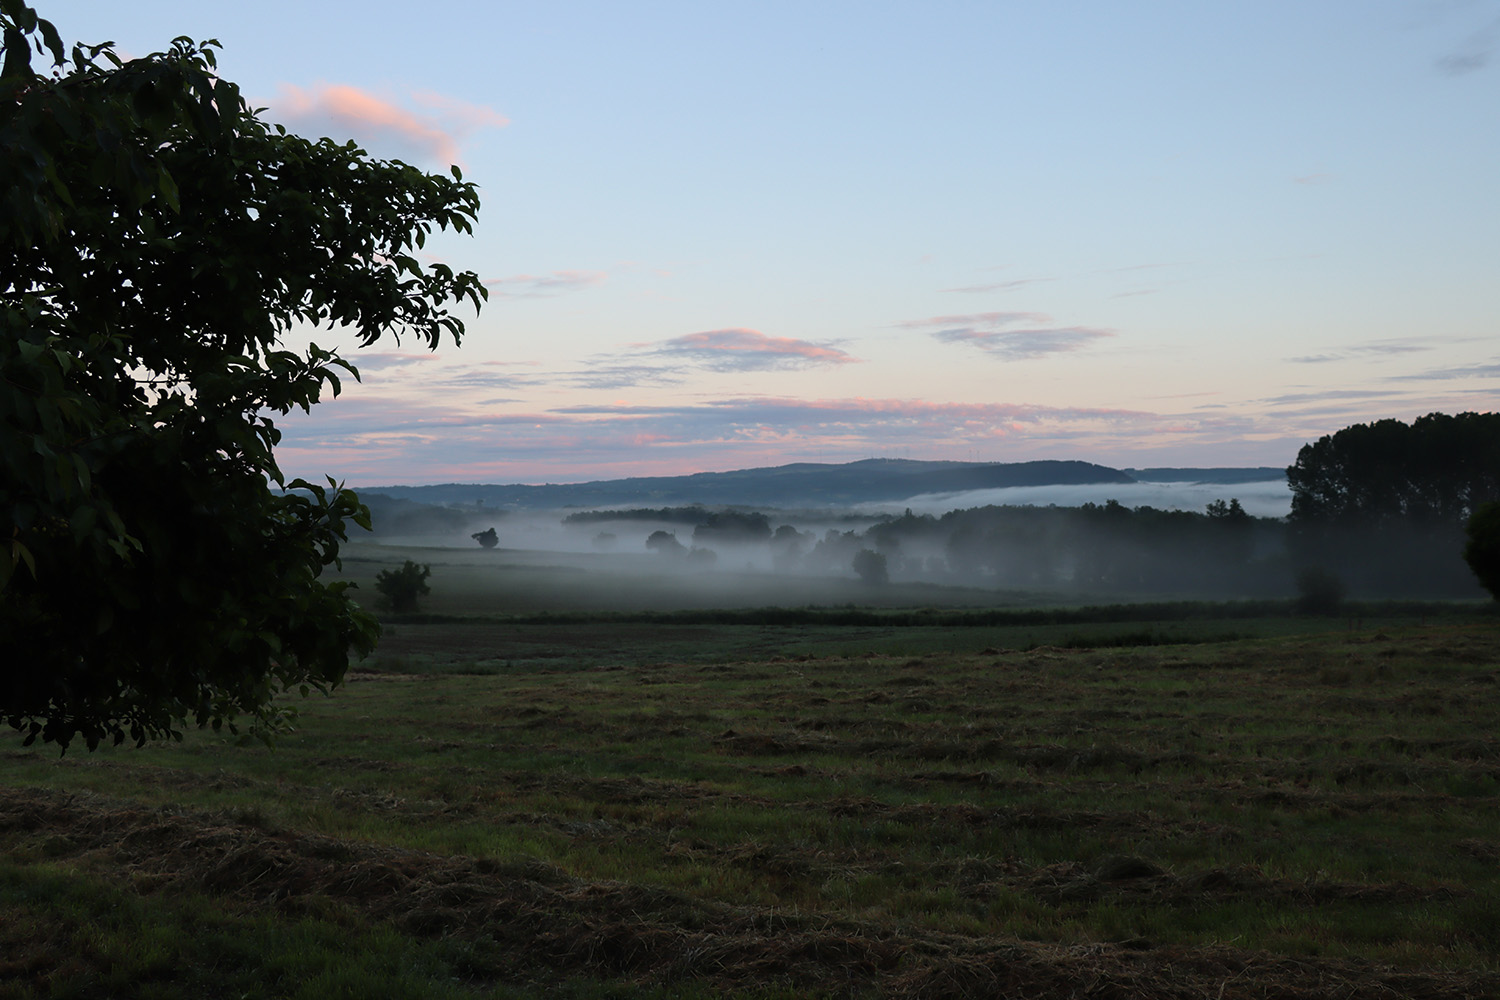 mist settles over the fields at O Cebreiro